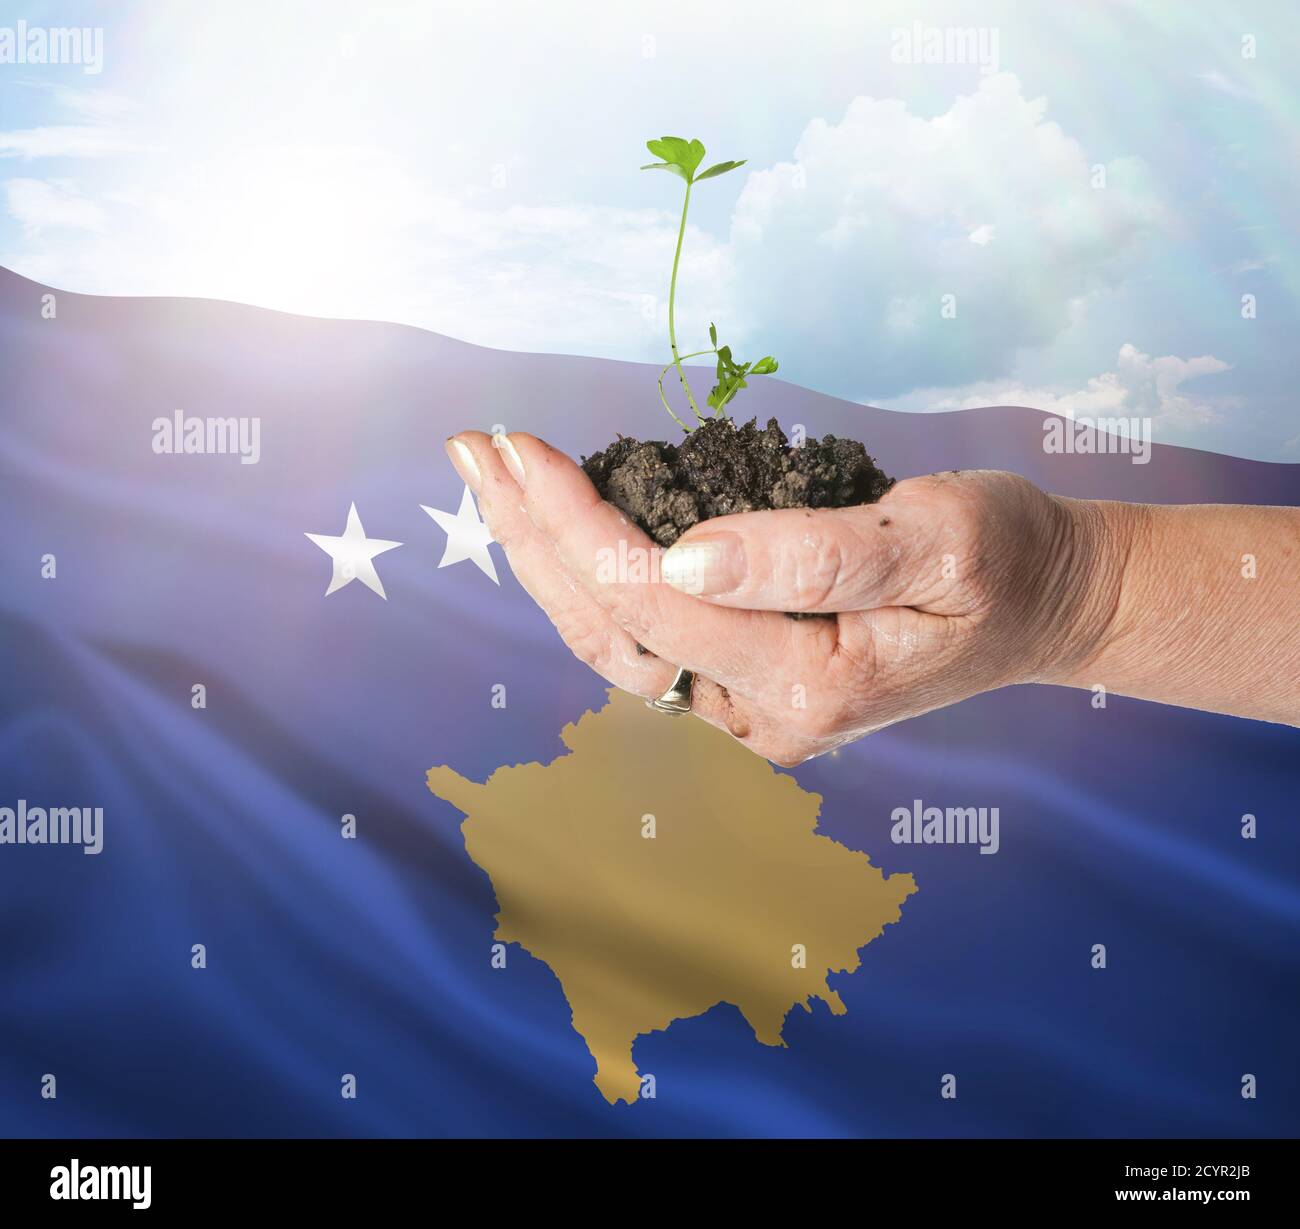 El crecimiento de Kosovo y un nuevo comienzo. Concepto de energía renovable verde y ecología. Mano sosteniendo planta joven. Foto de stock